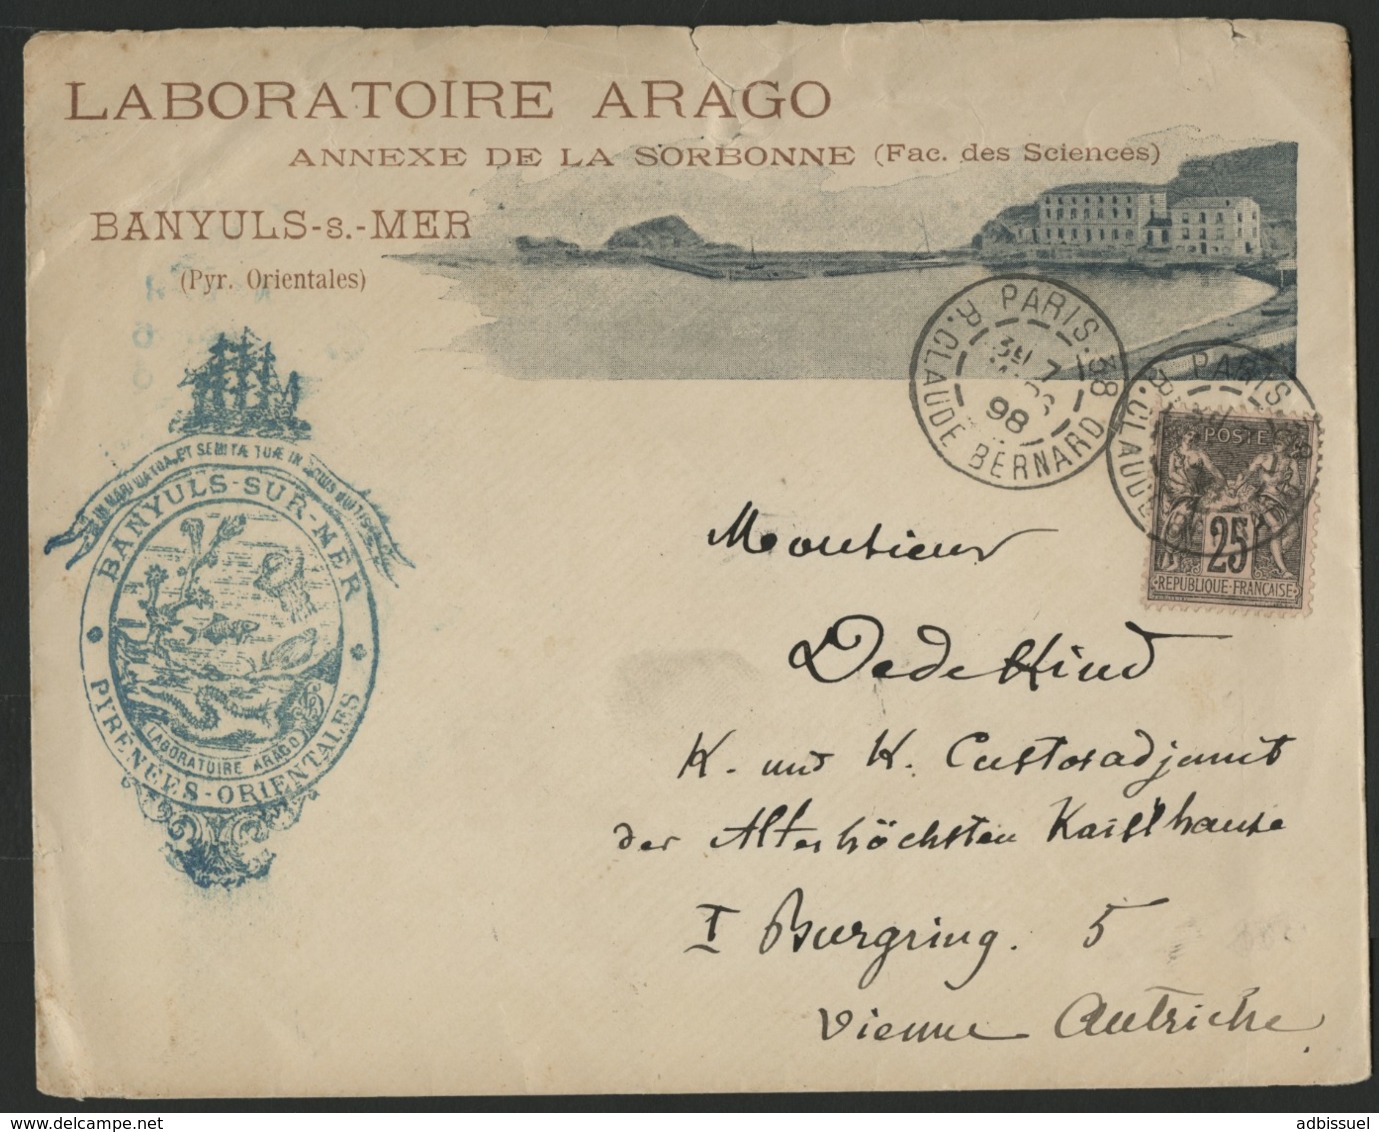 1898, N°97 Sur Enveloppe Avec Photo Représentant La Baie De Banyuls-s-mer Avec En Tête 'LABORATOIRE ARAGO" - 1877-1920: Période Semi Moderne